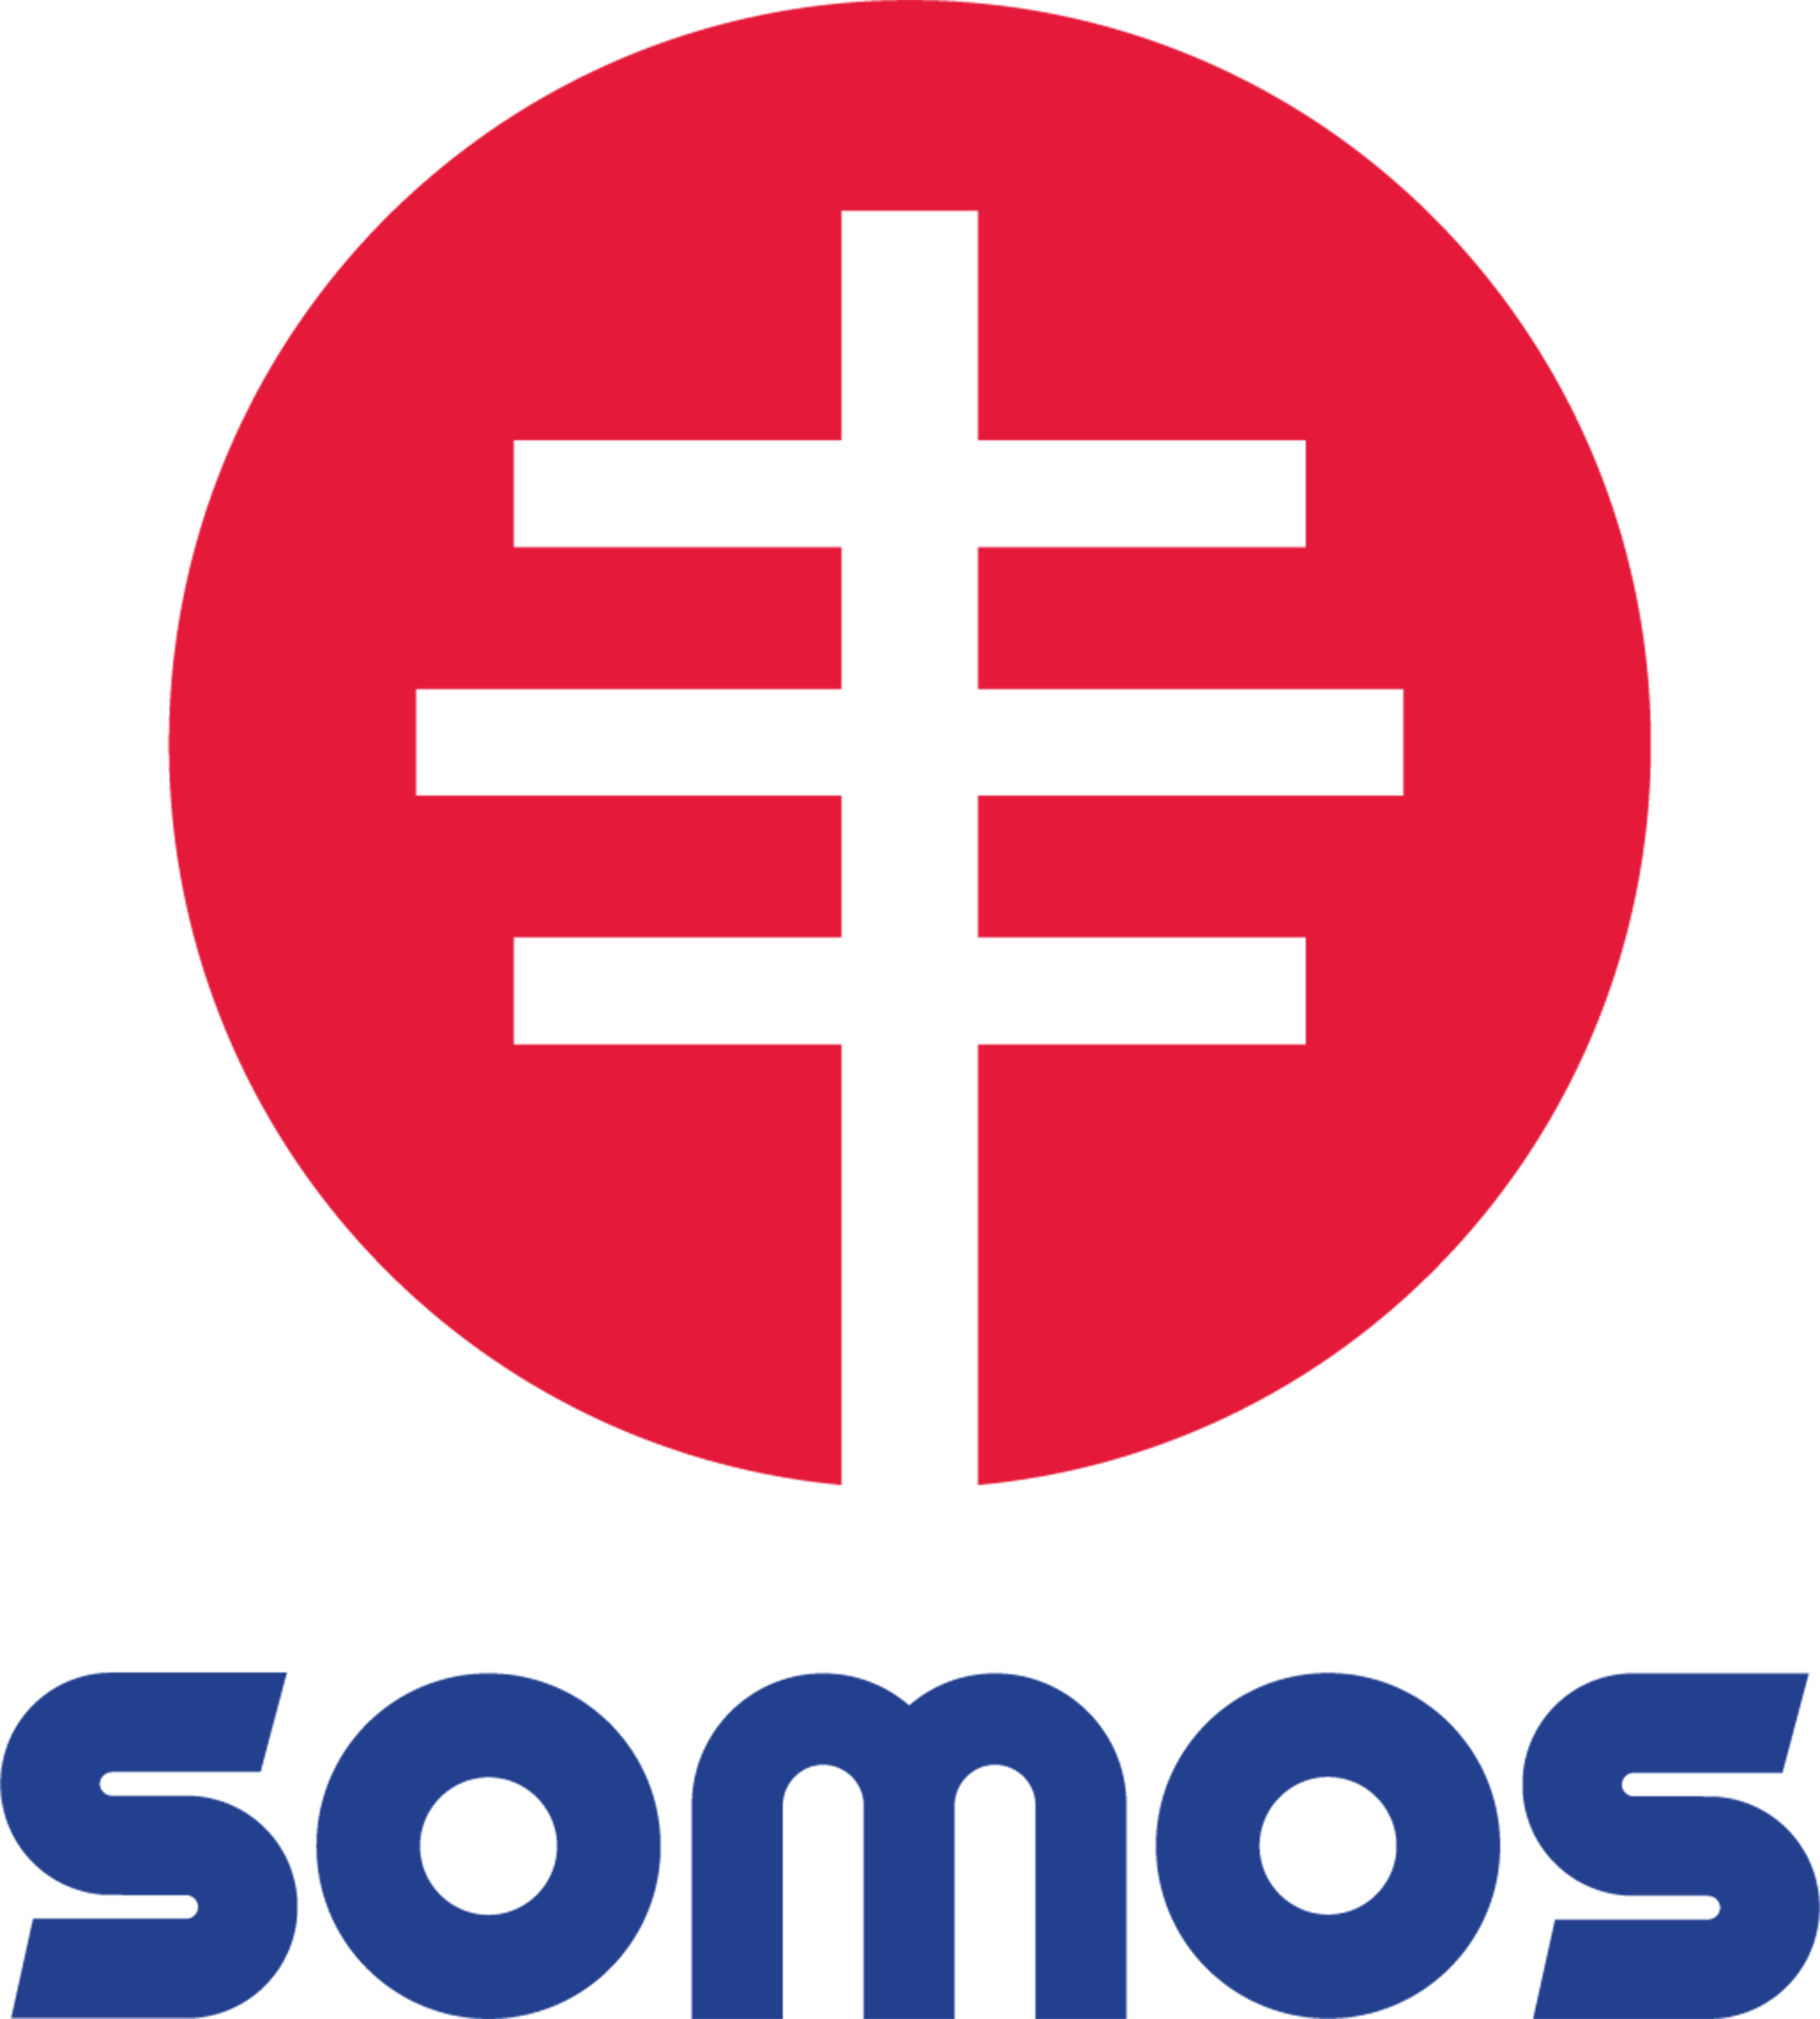 SOMOS Only-Vertical logo-Hi RES PNG.png